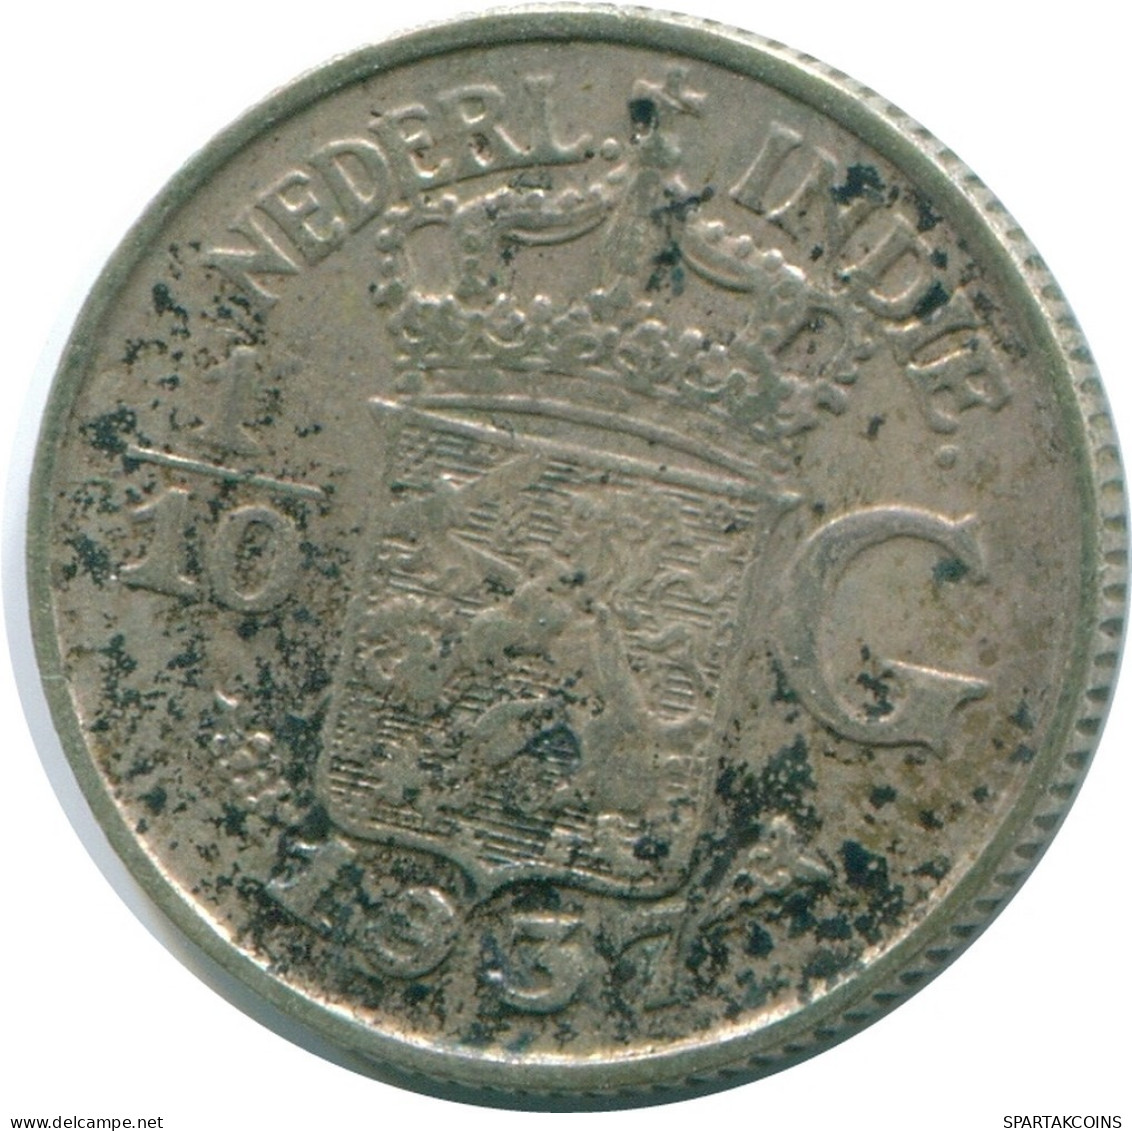 1/10 GULDEN 1937 INDIAS ORIENTALES DE LOS PAÍSES BAJOS PLATA #NL13470.3.E.A - Dutch East Indies